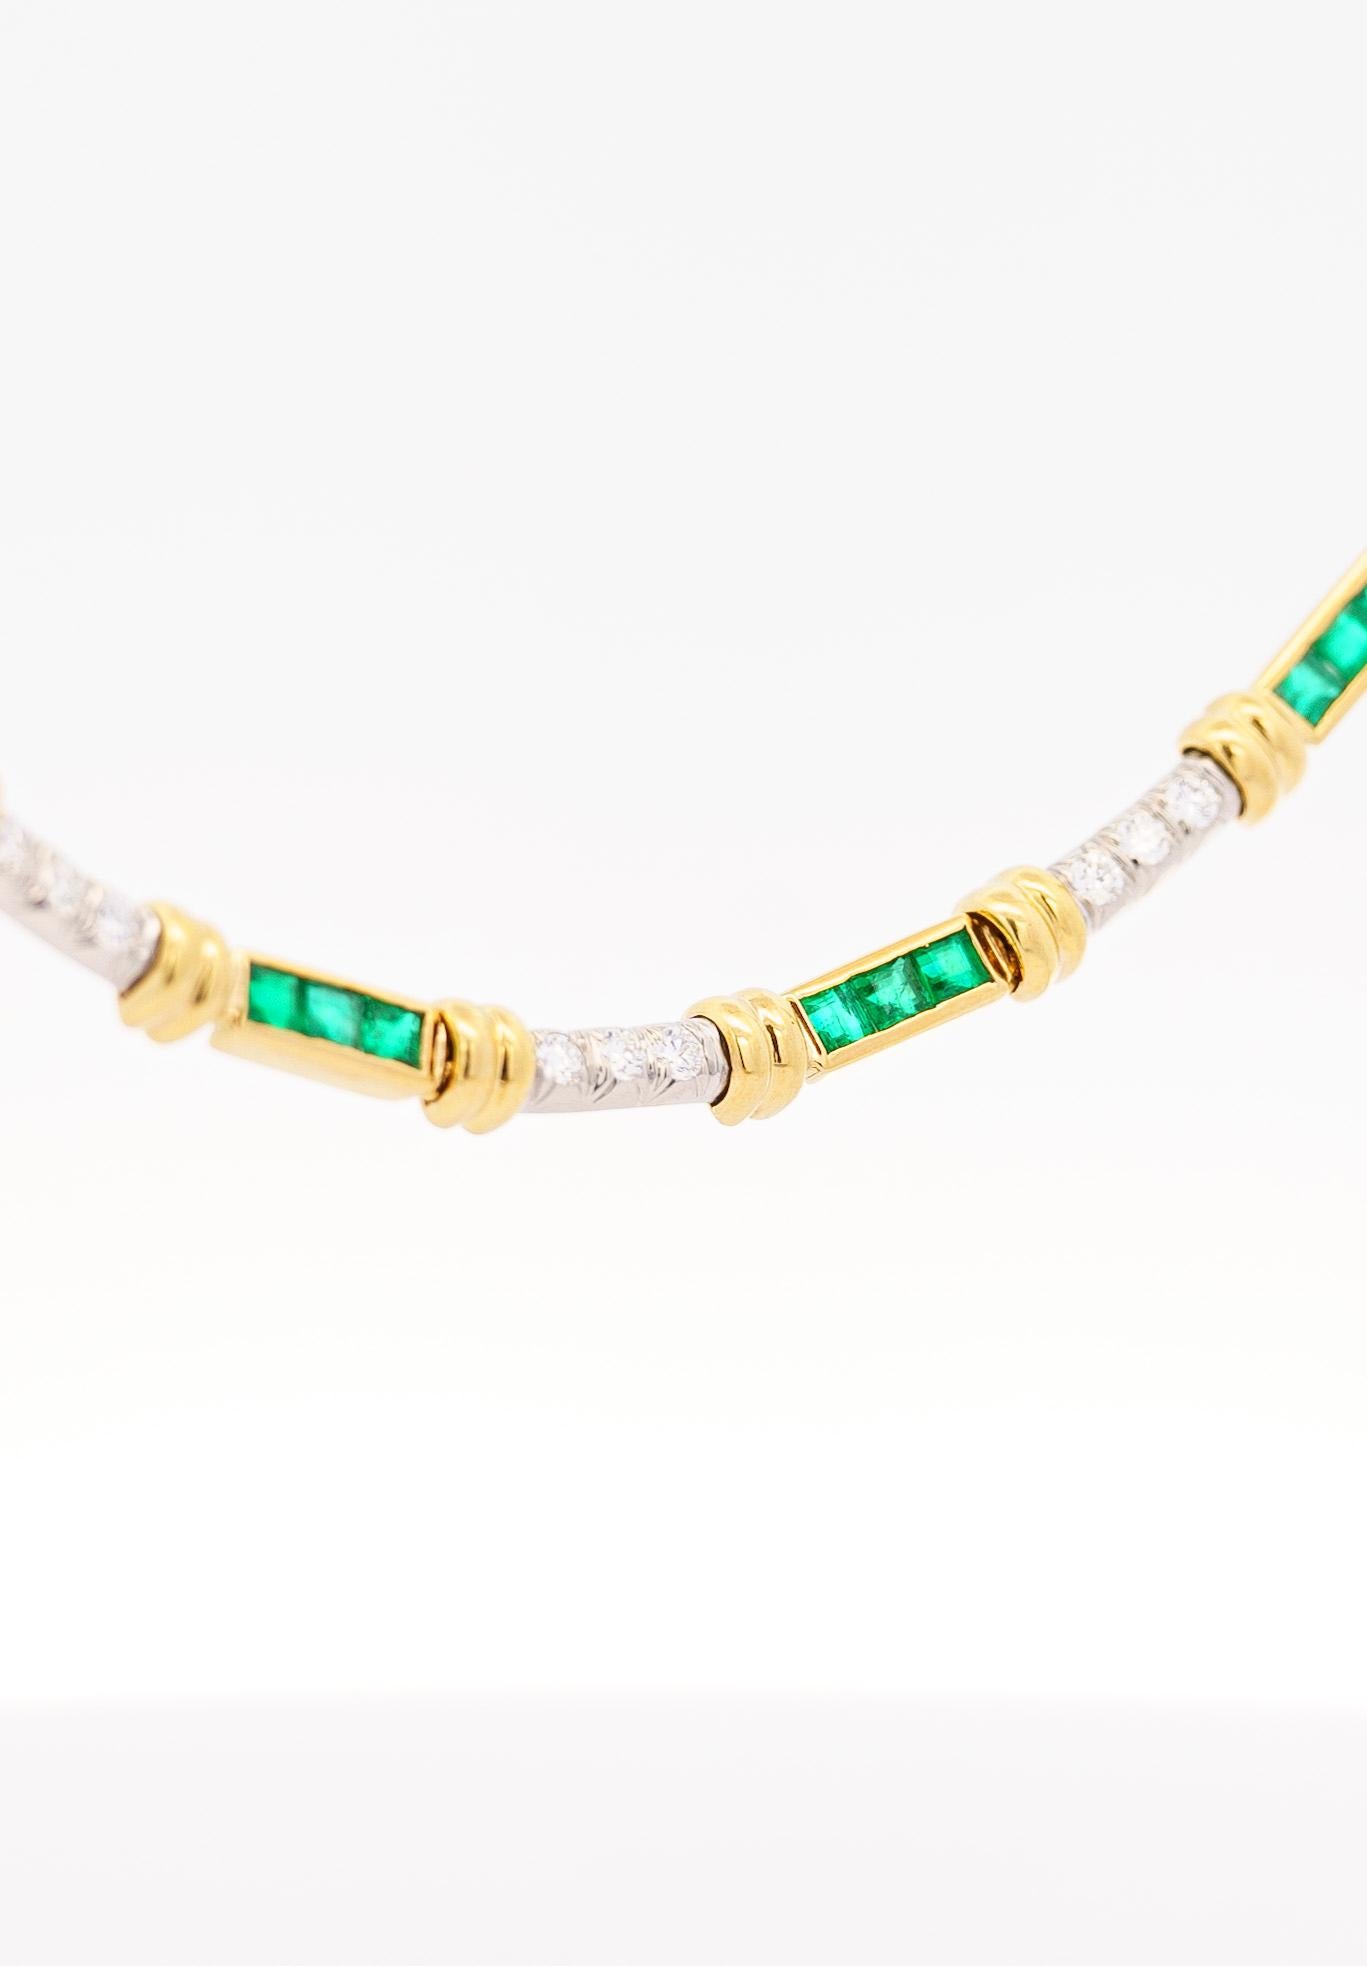 Halskette mit natürlichem Smaragd und Diamanten aus 18 Karat Gold. Fixiert mit einer strukturierten, polierten Oberfläche, Kanalspannung und Kastenverschluss mit doppelter Sicherheitsschließe. Ein natürlicher Edelstein und massives Goldstück mit